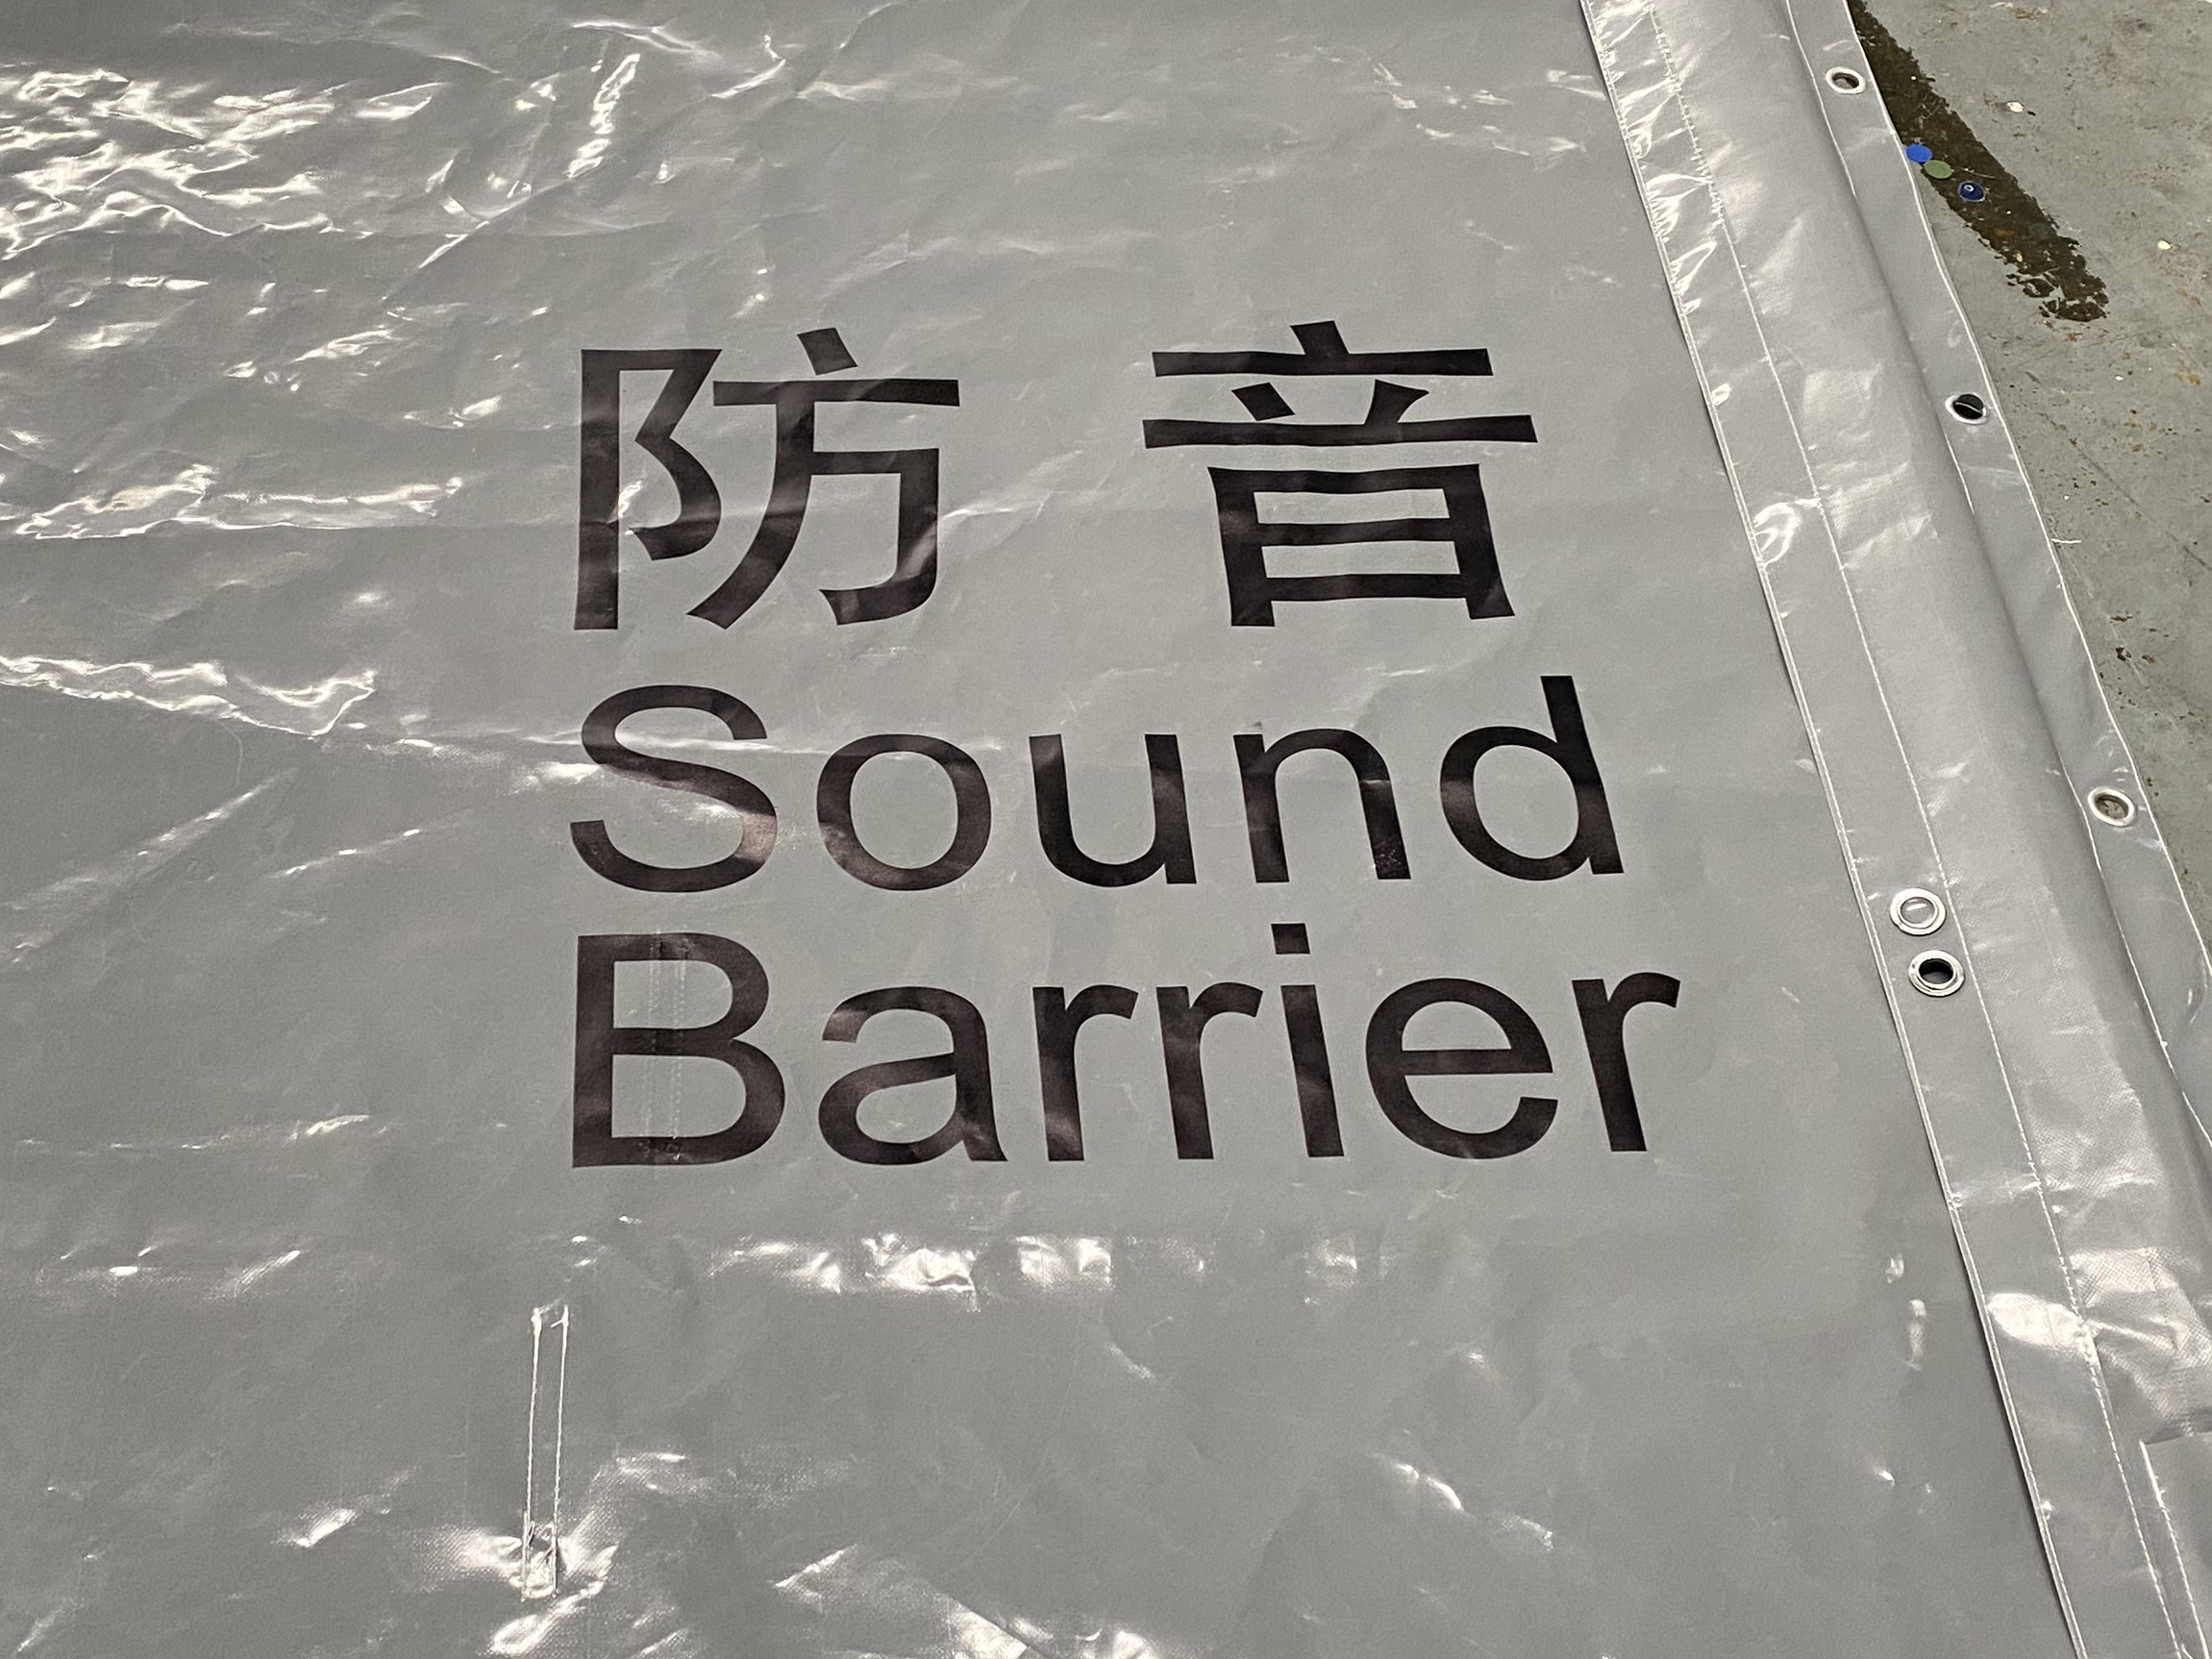 sound barrier tarpaulin,PVC sound barrier tarpaulin, sound barrier, sound barrier sheet,noise barrier sheet